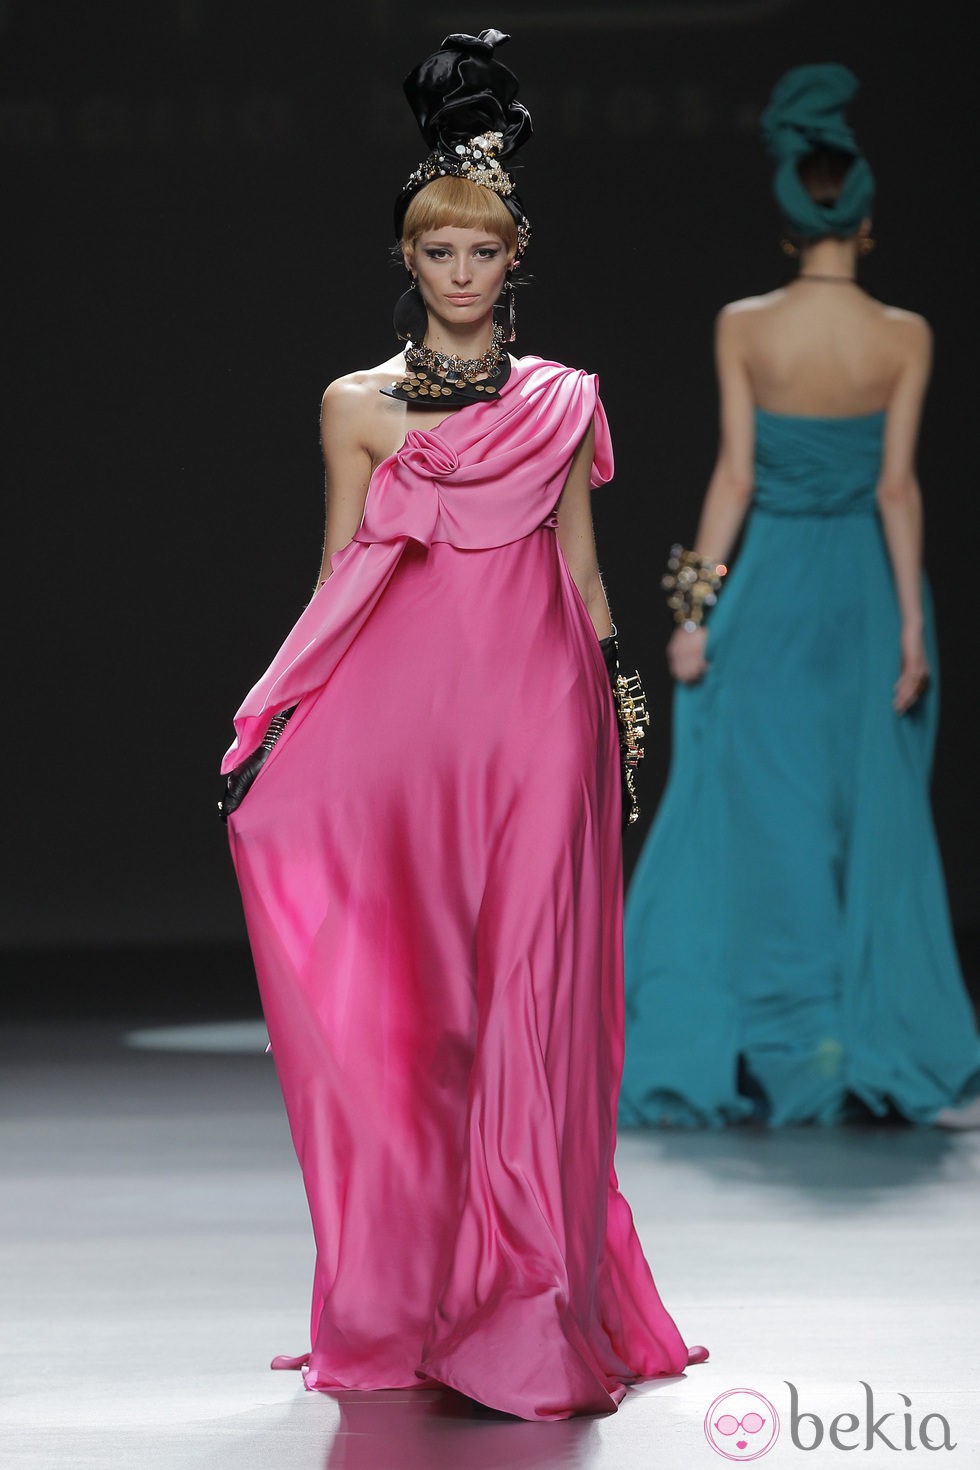 Vestido rosa de la colección otoño/invierno 2013/2014 de María Barros en Madrid Fashion Week